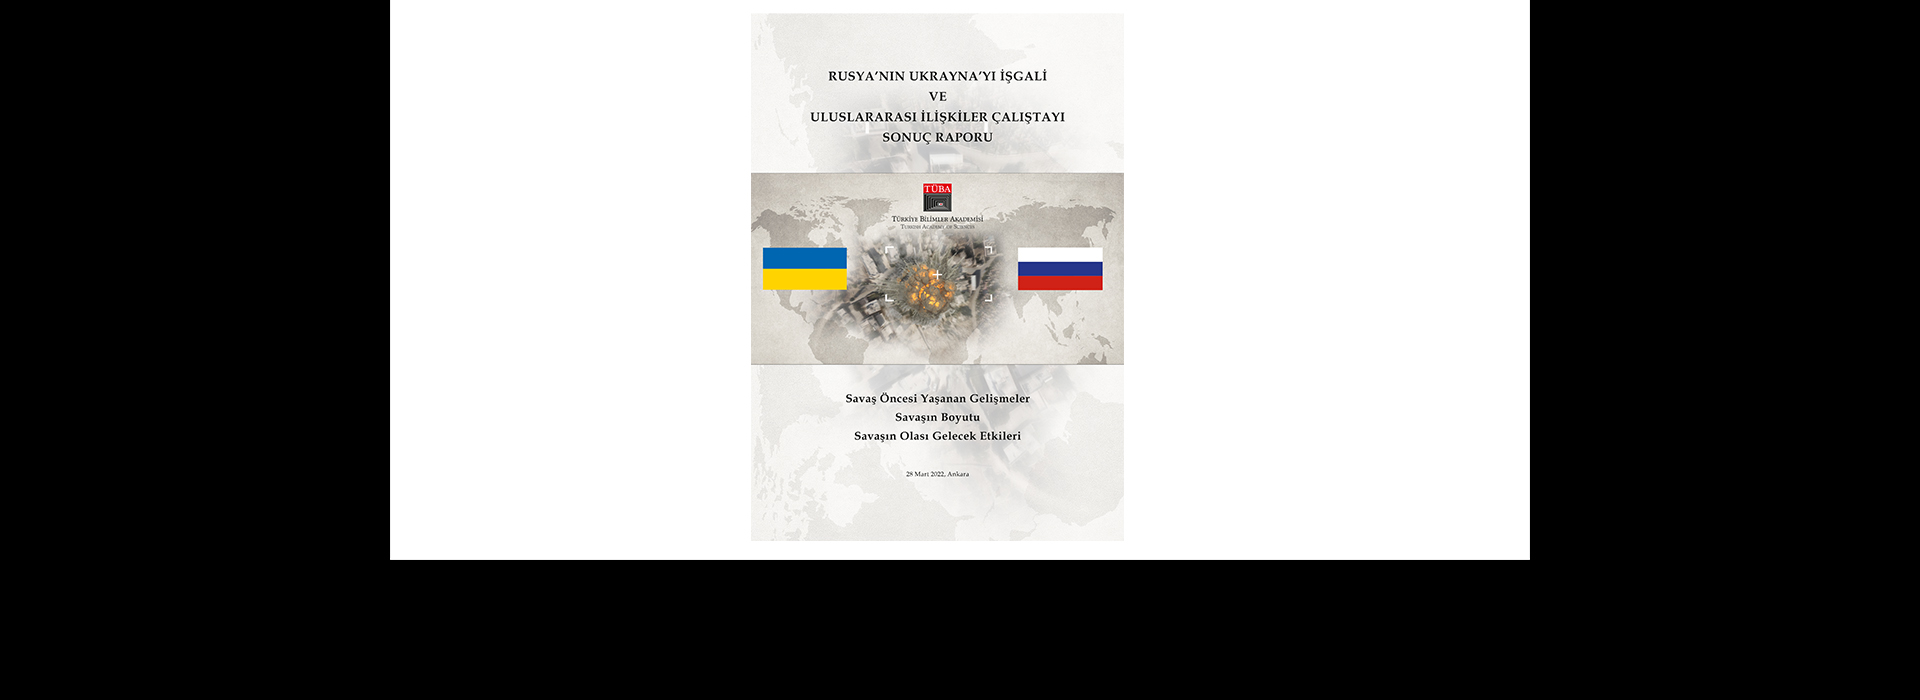 Rusya’nın Ukrayna’yı İşgali ve Uluslararası İlişkiler Çalıştayı Sonuç Raporu Yayımlandı